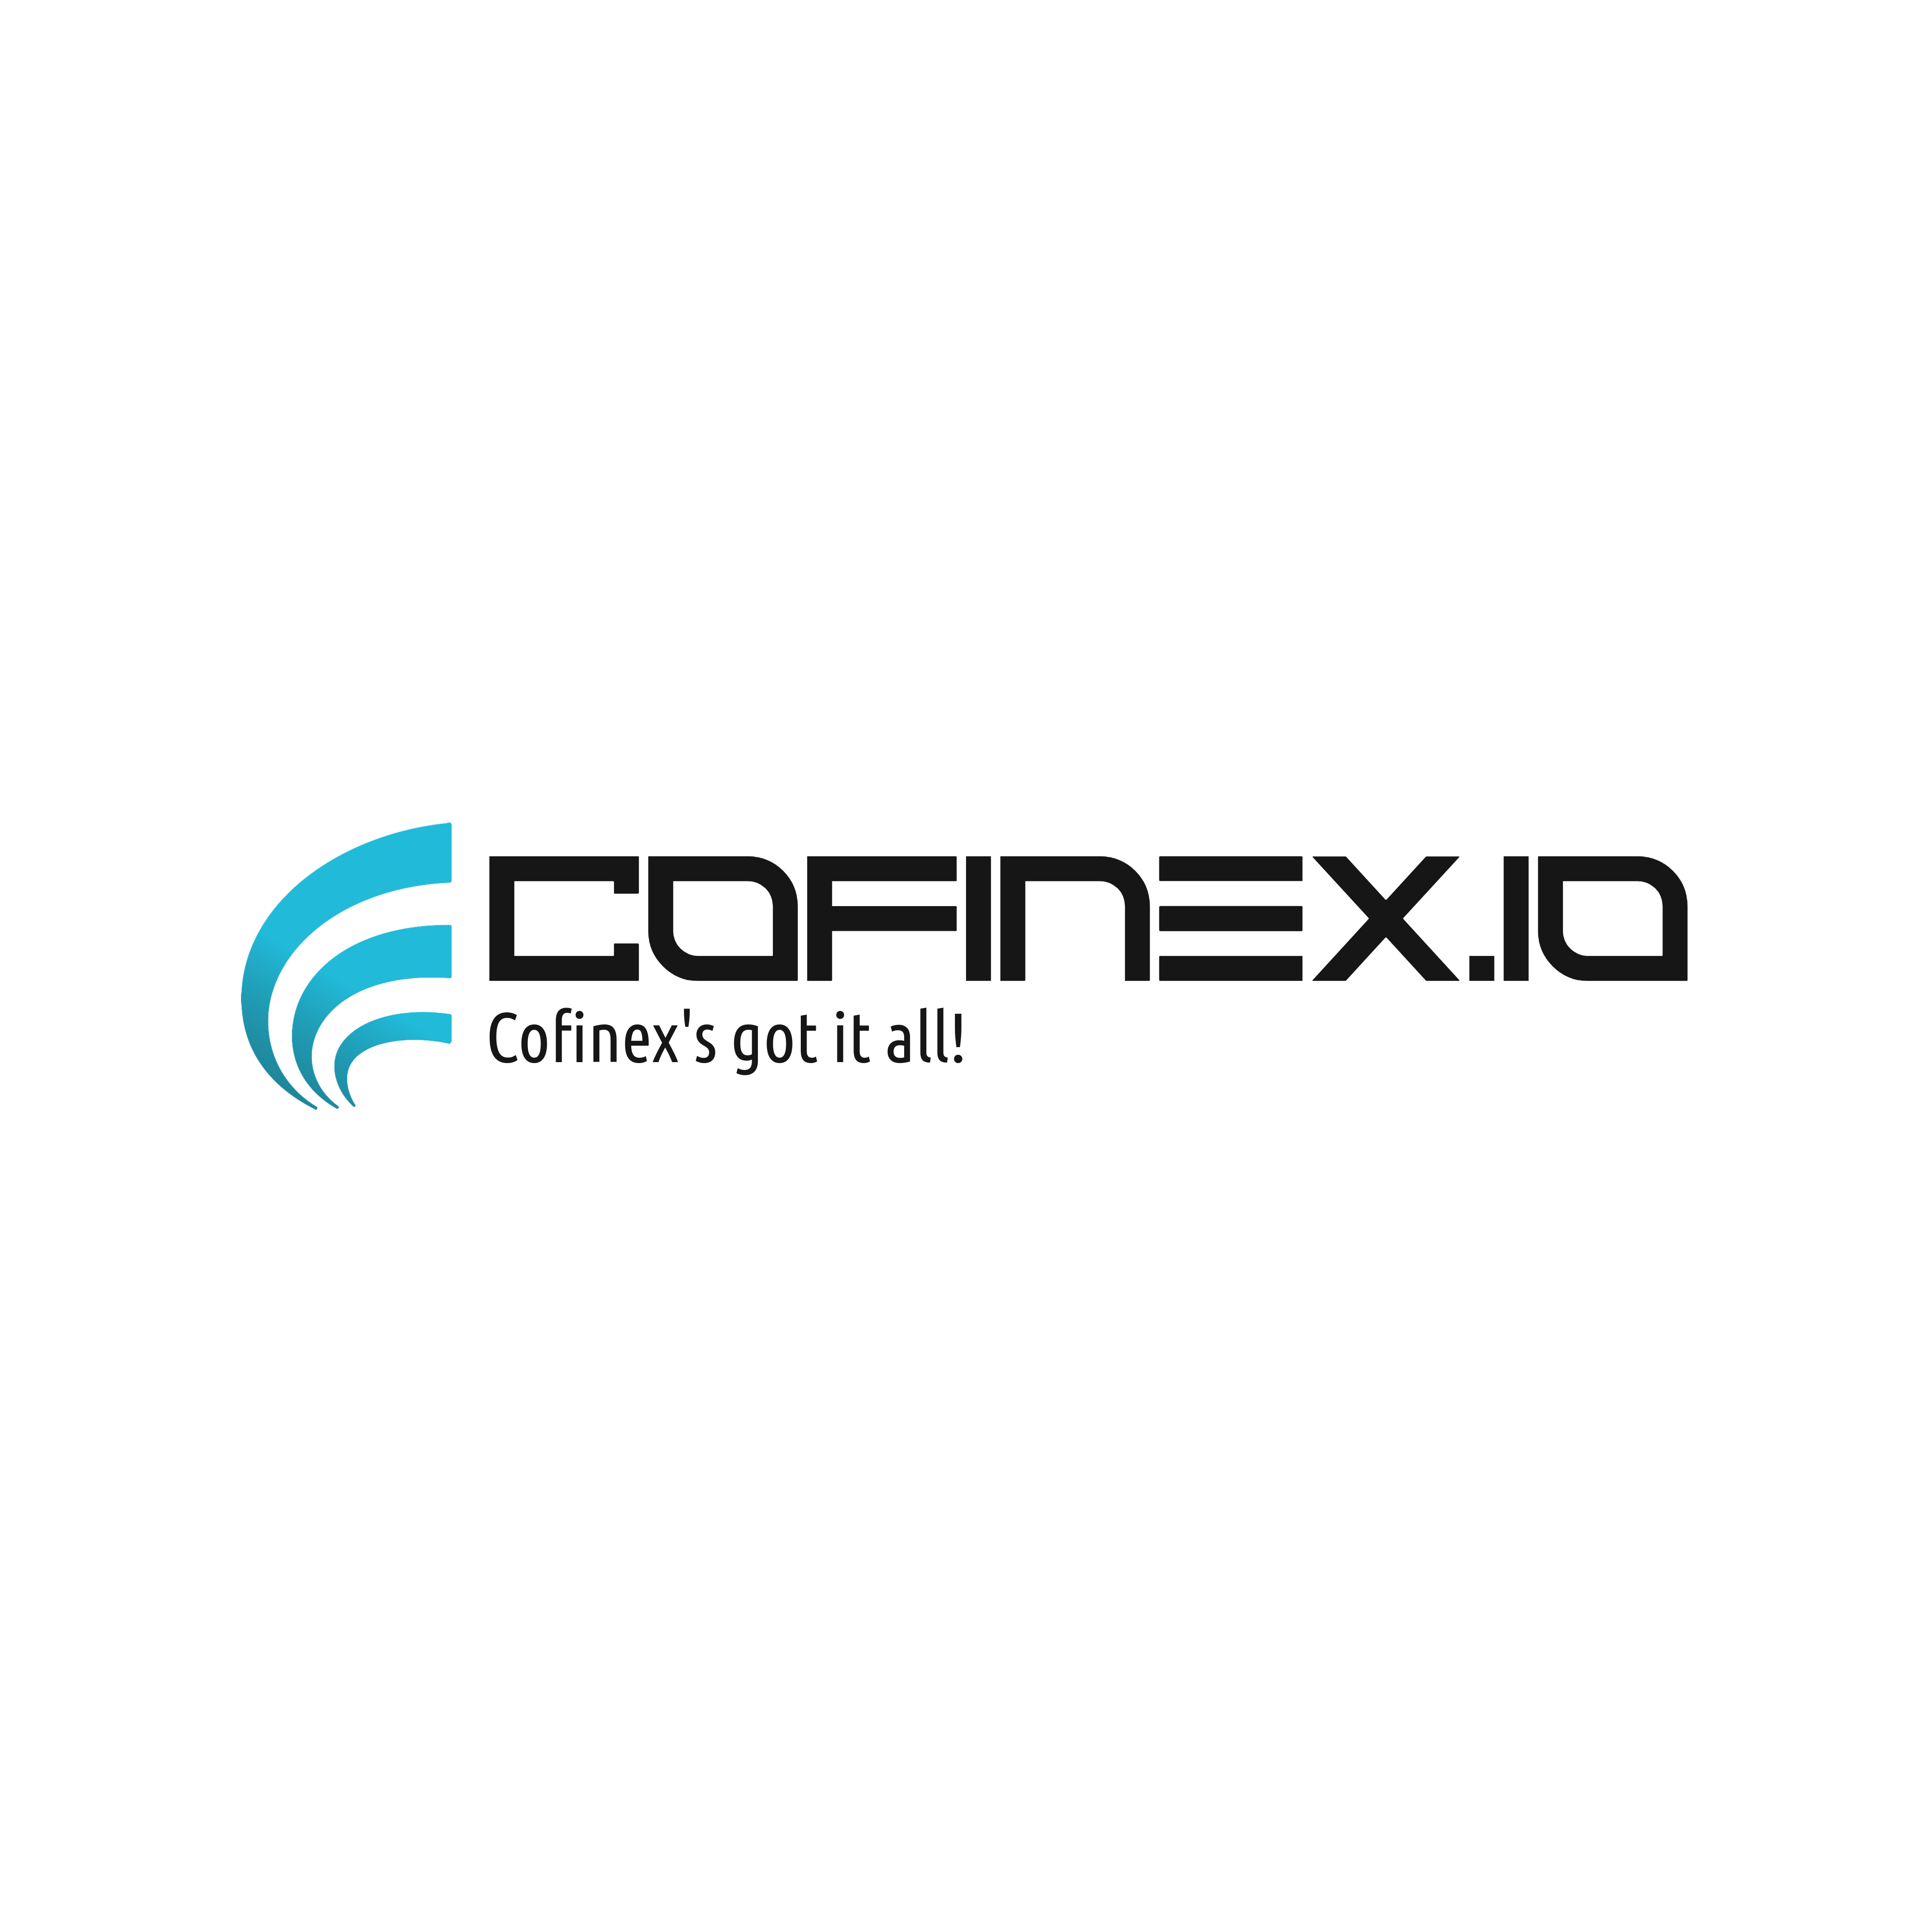 Cofinex logo